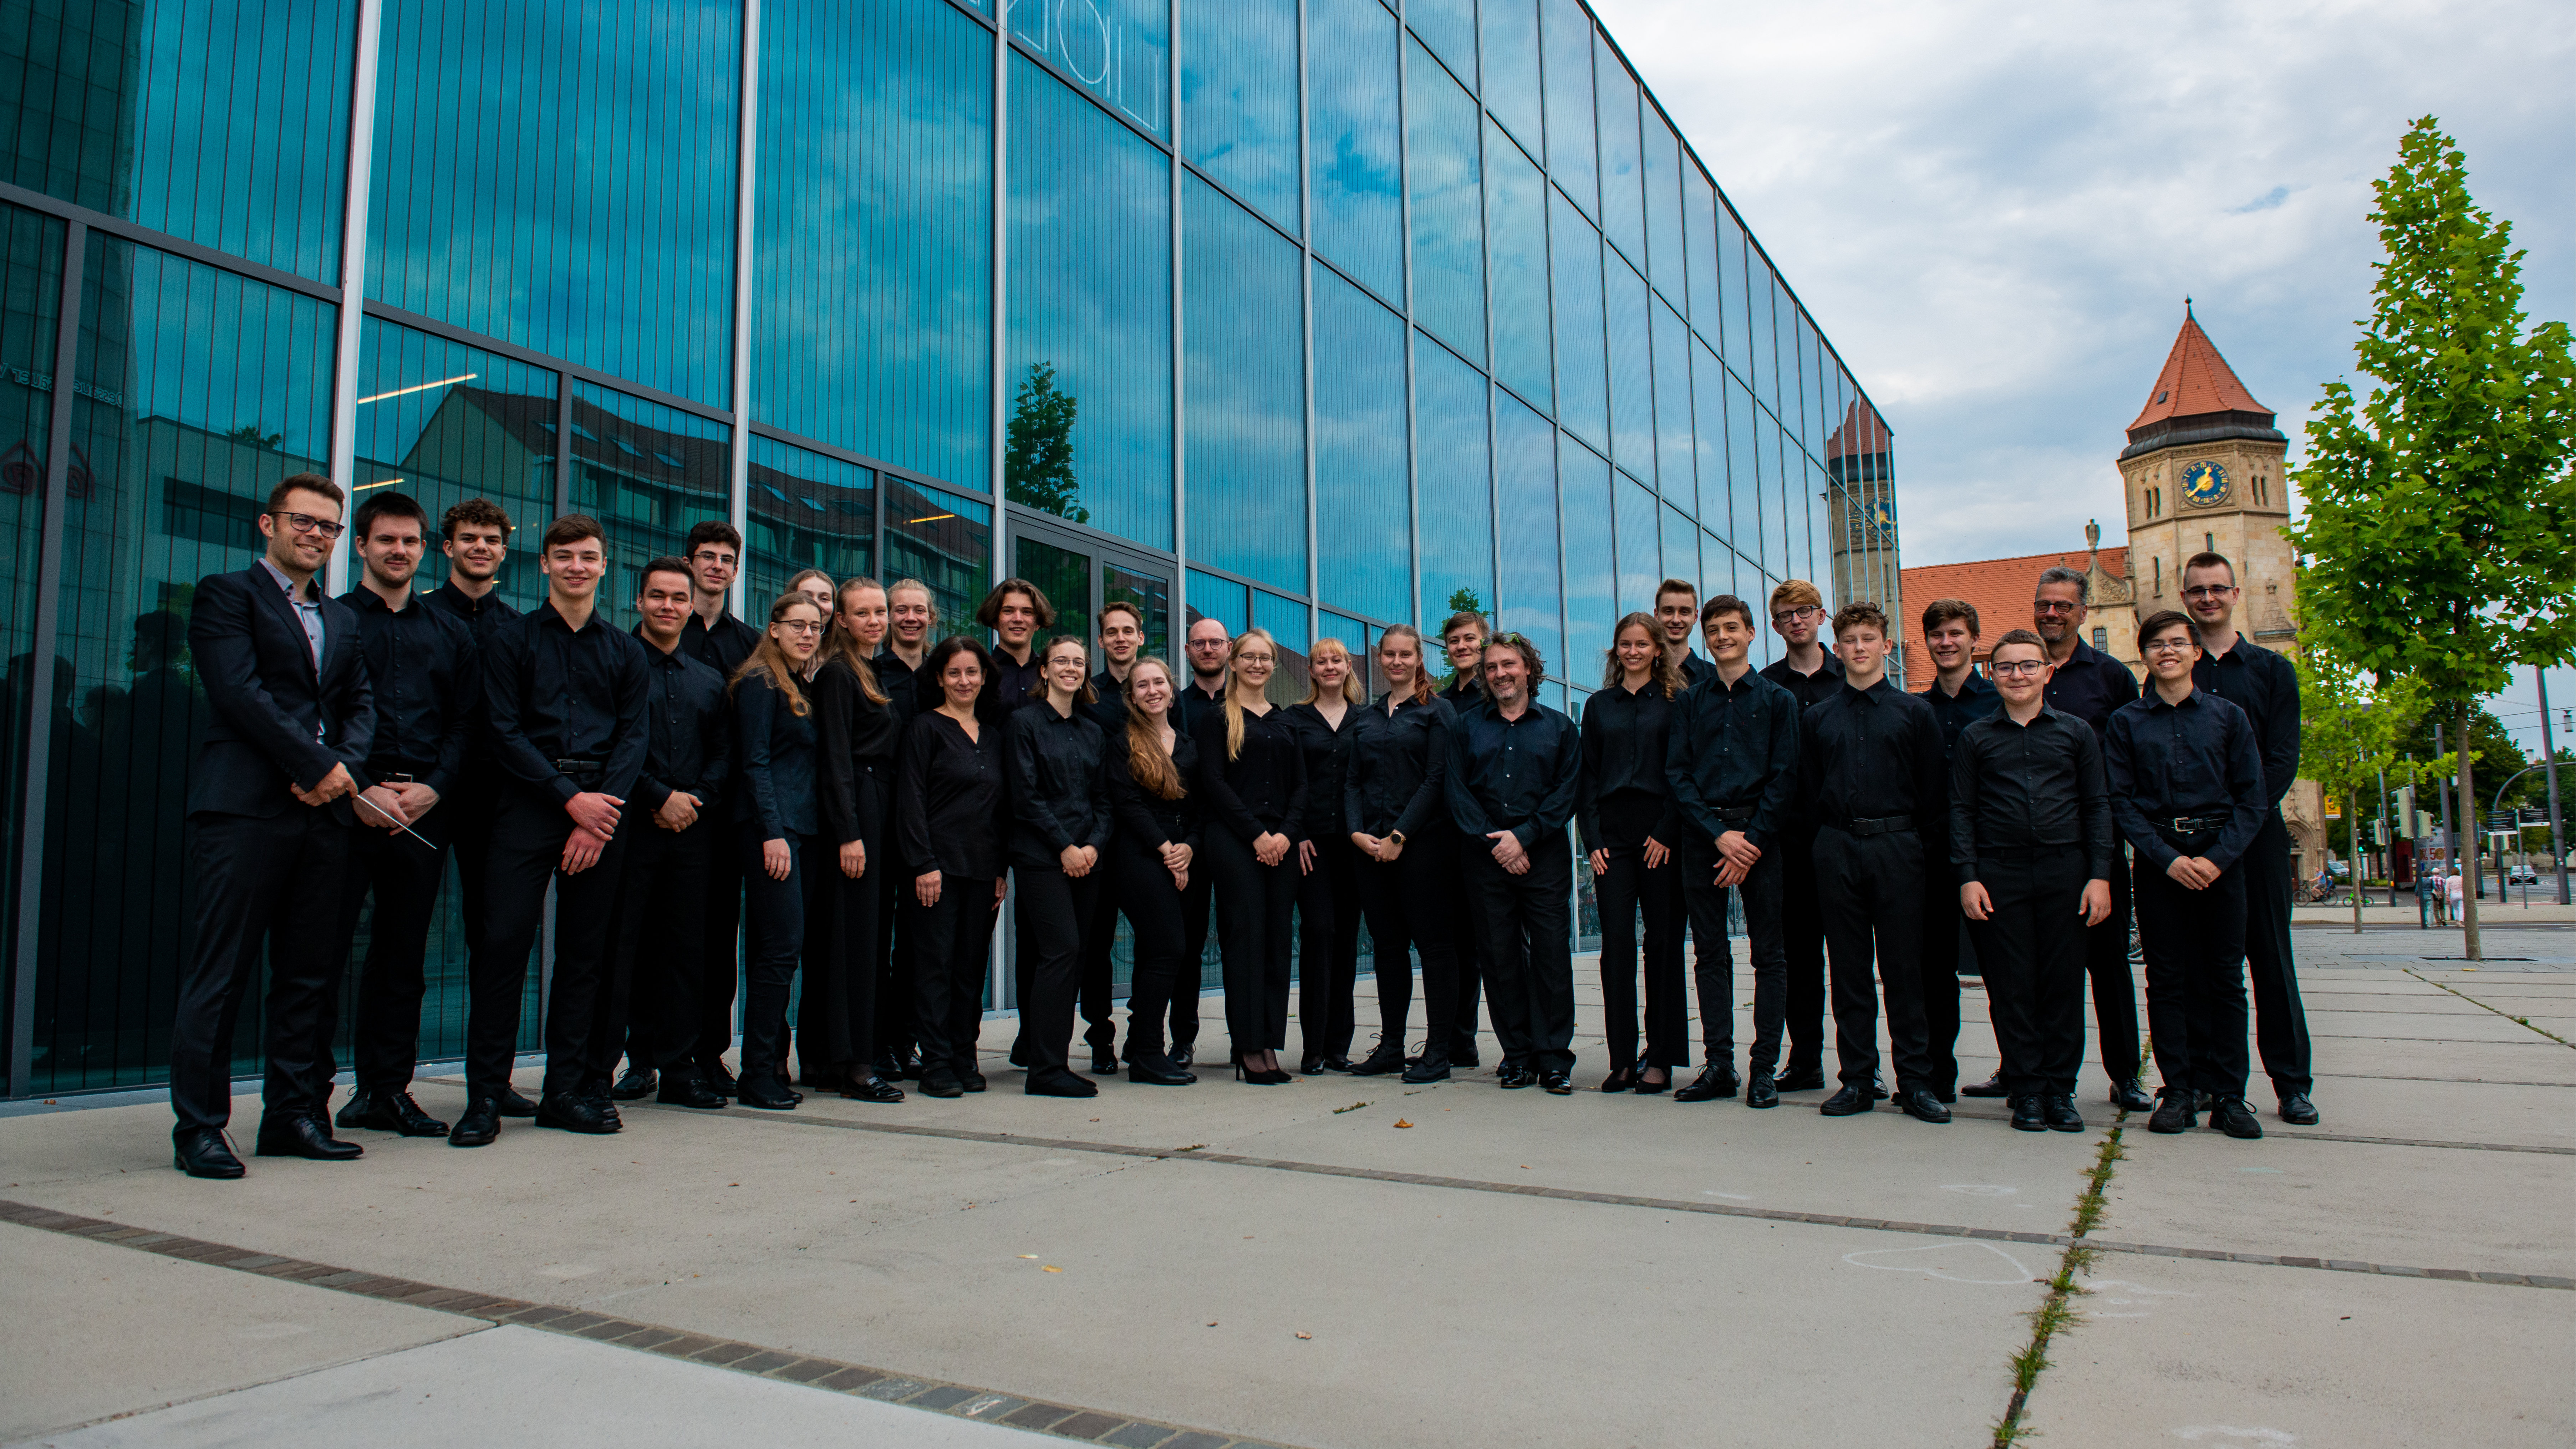 Bild von den Mitspielern des Orchesters, alle Personen tragen schwarze Auftrittskleidung und einige haben ihr Akkordeon. 